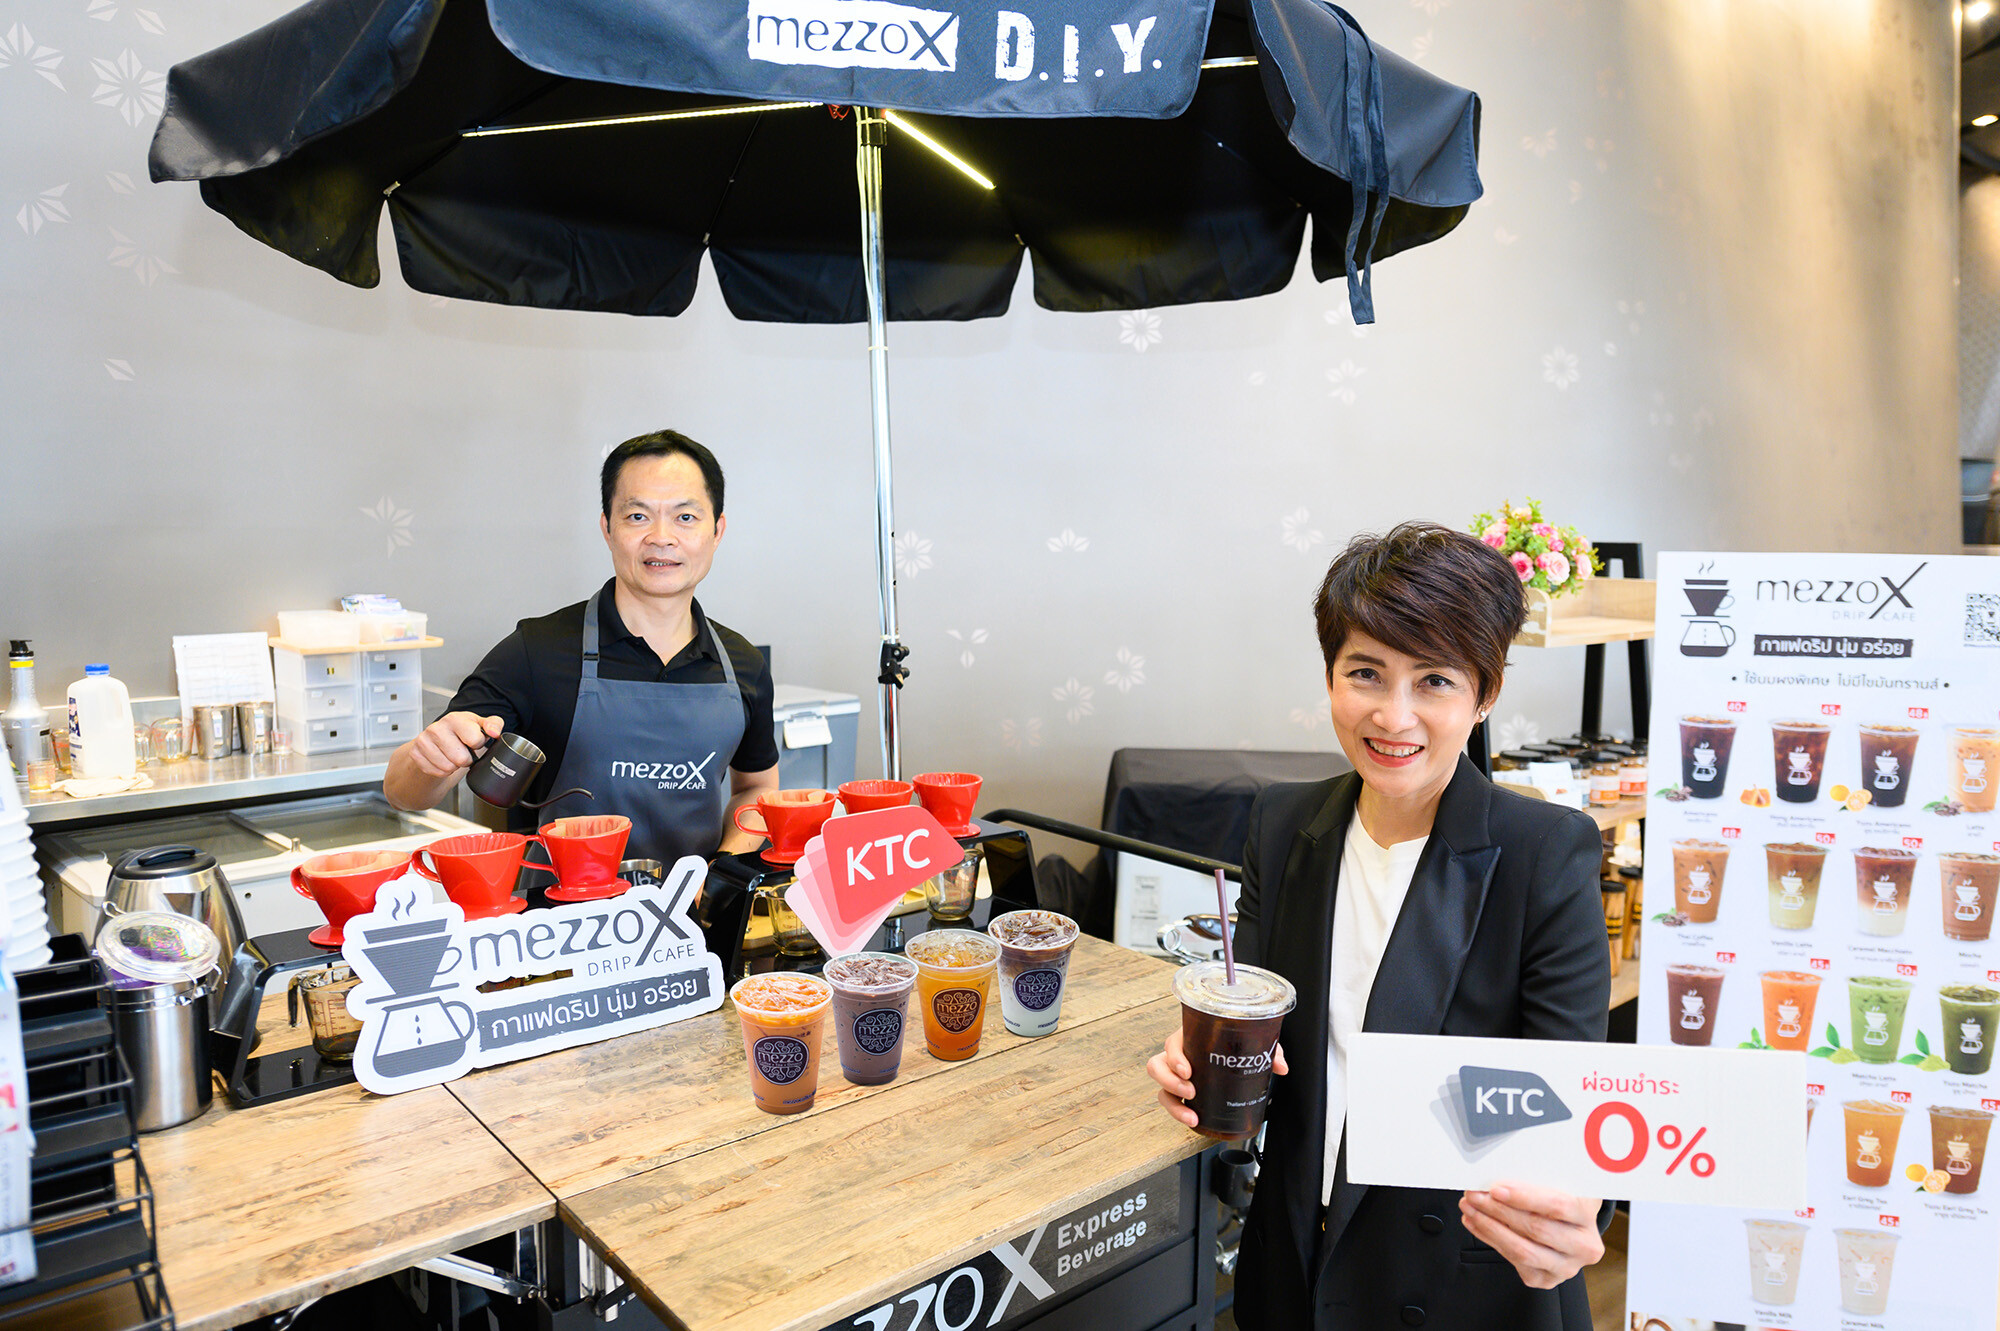 เคทีซีจับมือร้านกาแฟดริปแบรนด์ใหม่ “MezzoX Drip Cafe” ปล่อยสินเชื่อดอกเบี้ย 0% ขยายแฟรนไชส์ทั่วประเทศ